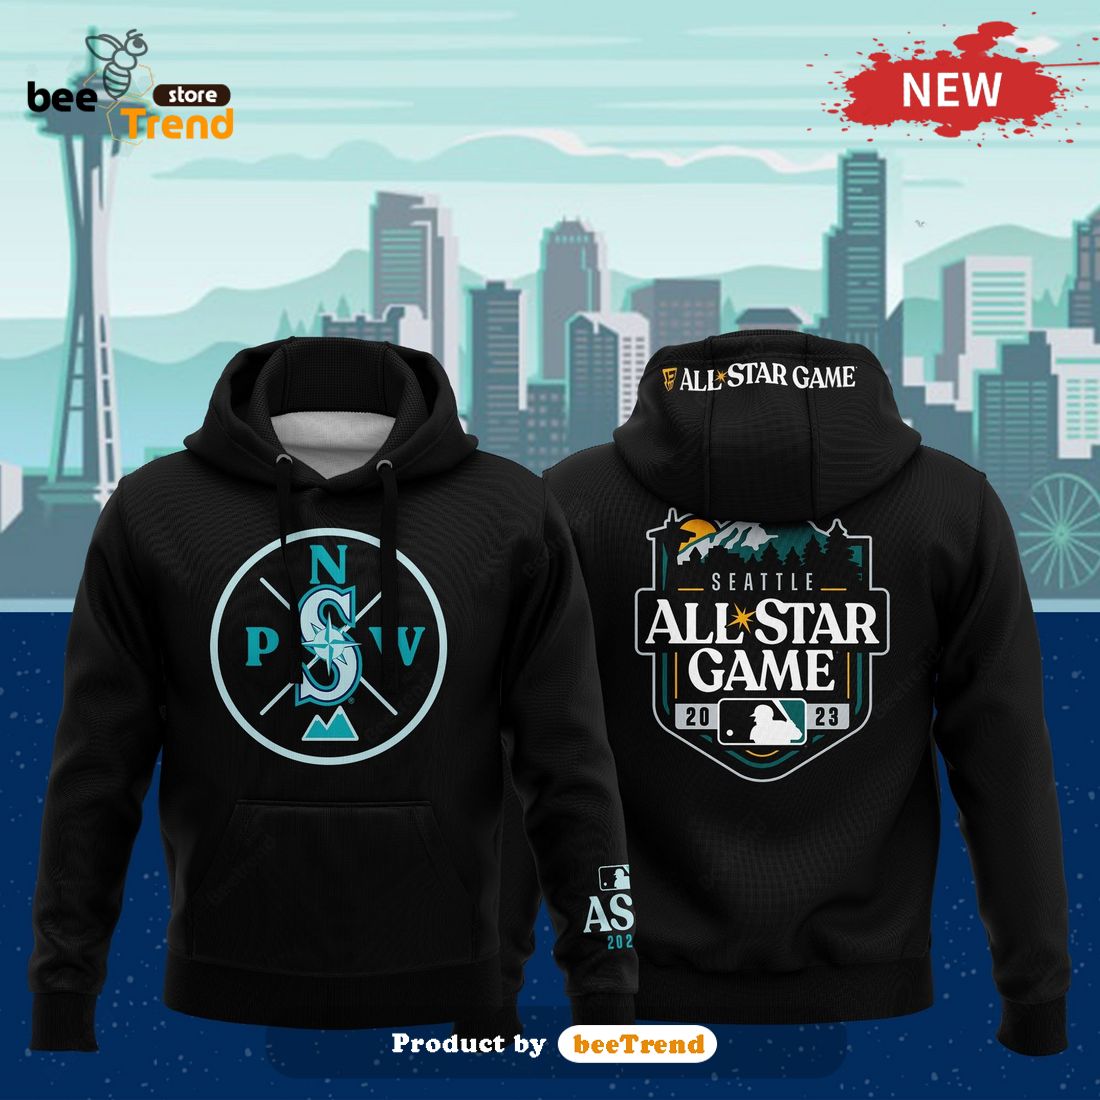 Seattle Mariners Sweatshirts, Seattle Mariners Fan Gear Shopping